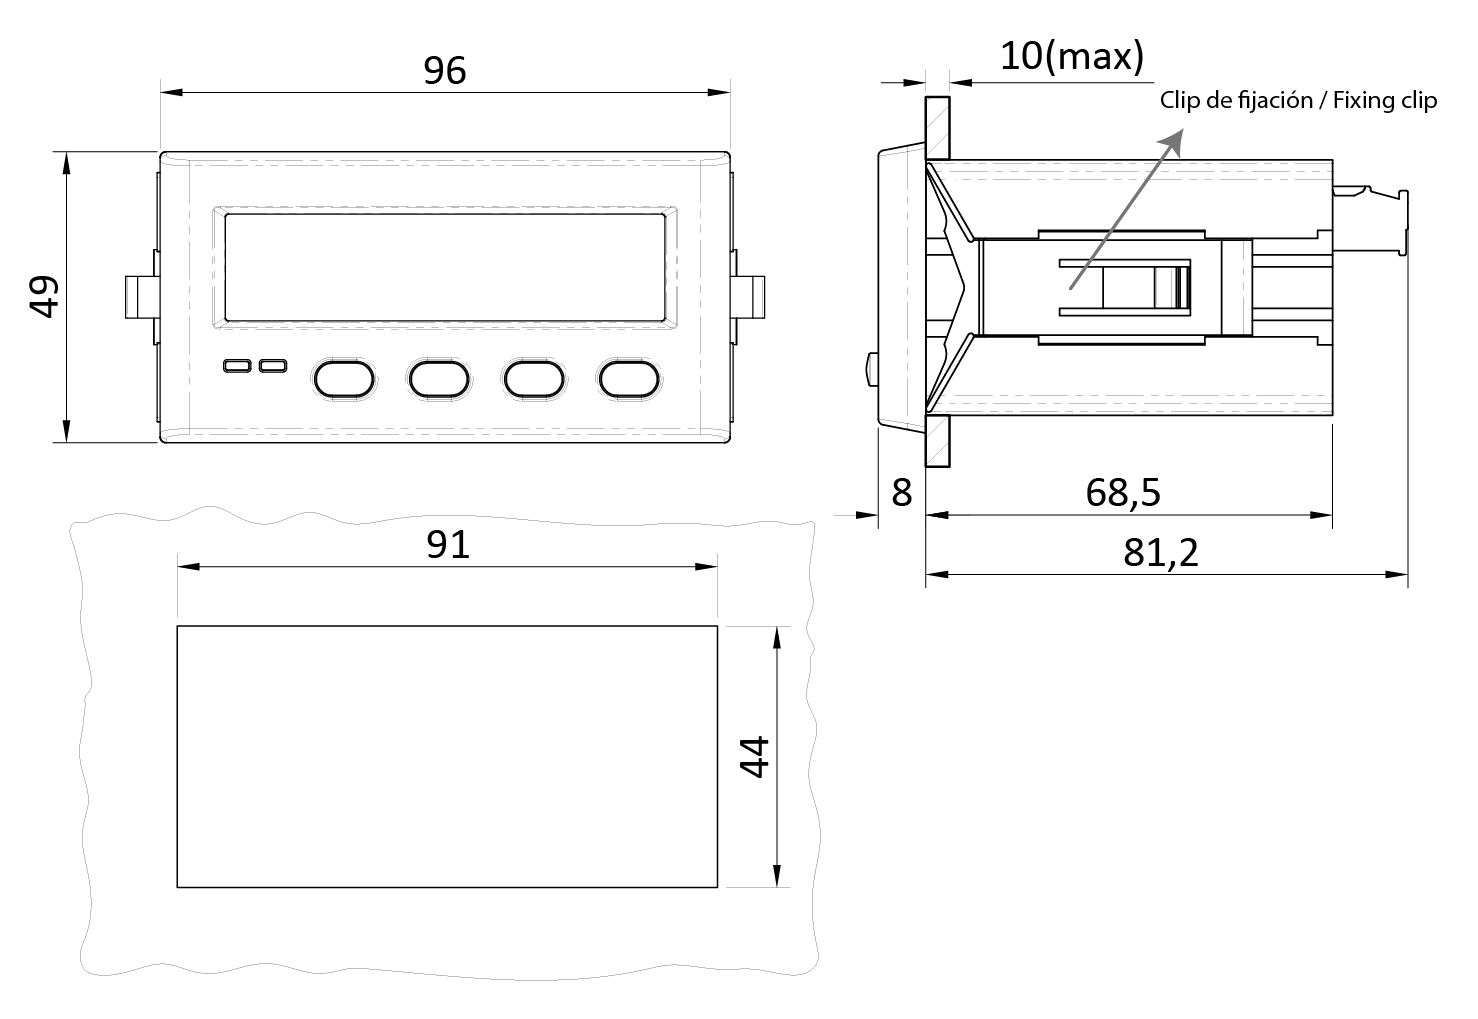 V42D Compteur de panneau de tension numérique mini avec affichage de  lumière rouge à fils, mesurez la tension: DC DC 1.7-25V